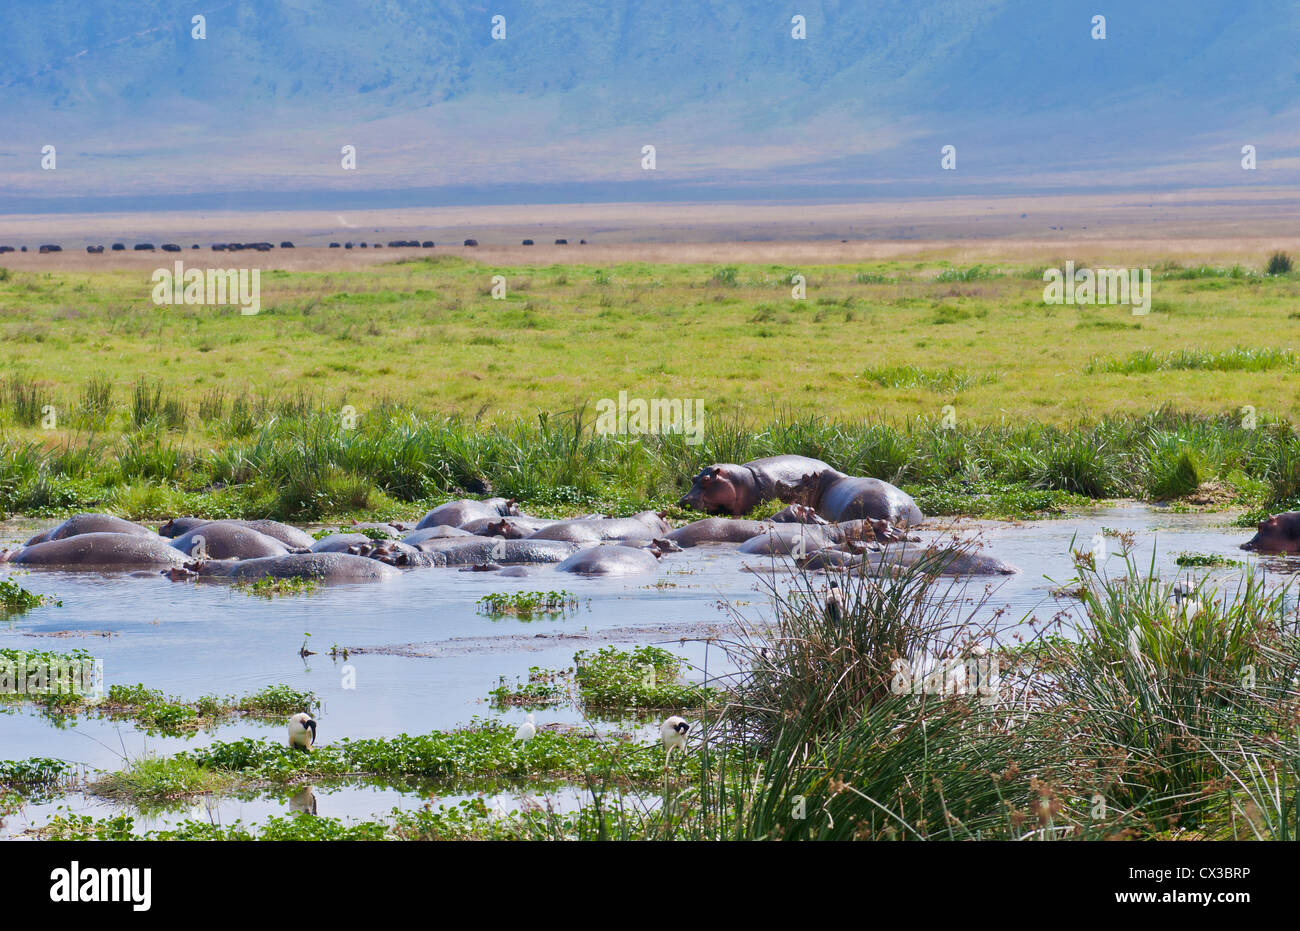 Afrique Tanzanie cratère Ngorongoro Conservation Area avec réserve et des hippopotames dans l'eau animaux dans wild safari Banque D'Images